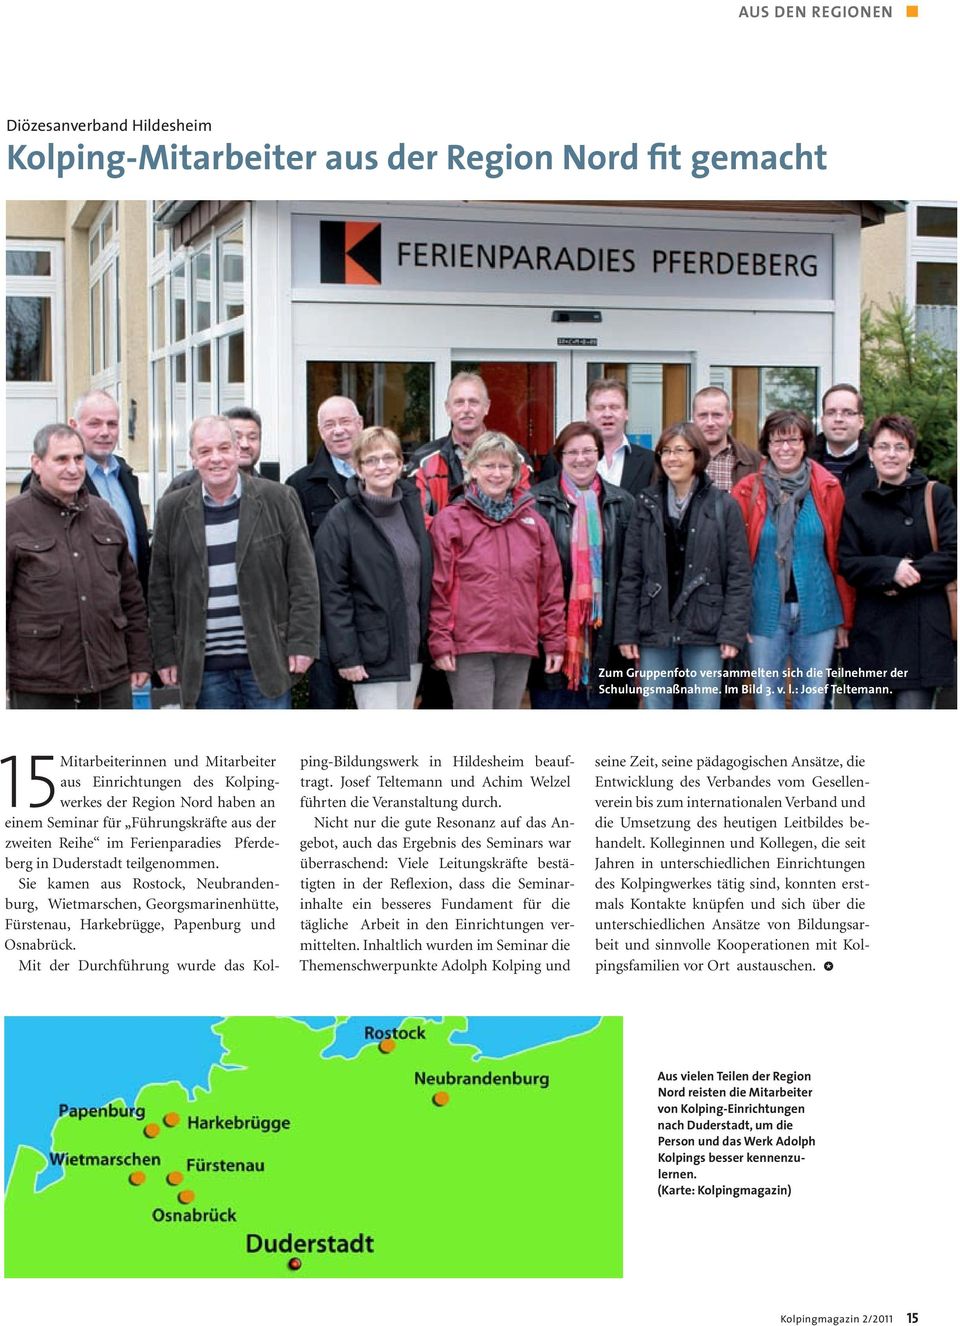 15 Mitarbeiterinnen und Mitarbeiter aus Einrichtungen des Kolpingwerkes der Region Nord haben an einem Seminar für Führungskräfte aus der zweiten Reihe im Ferienparadies Pferdeberg in Duderstadt